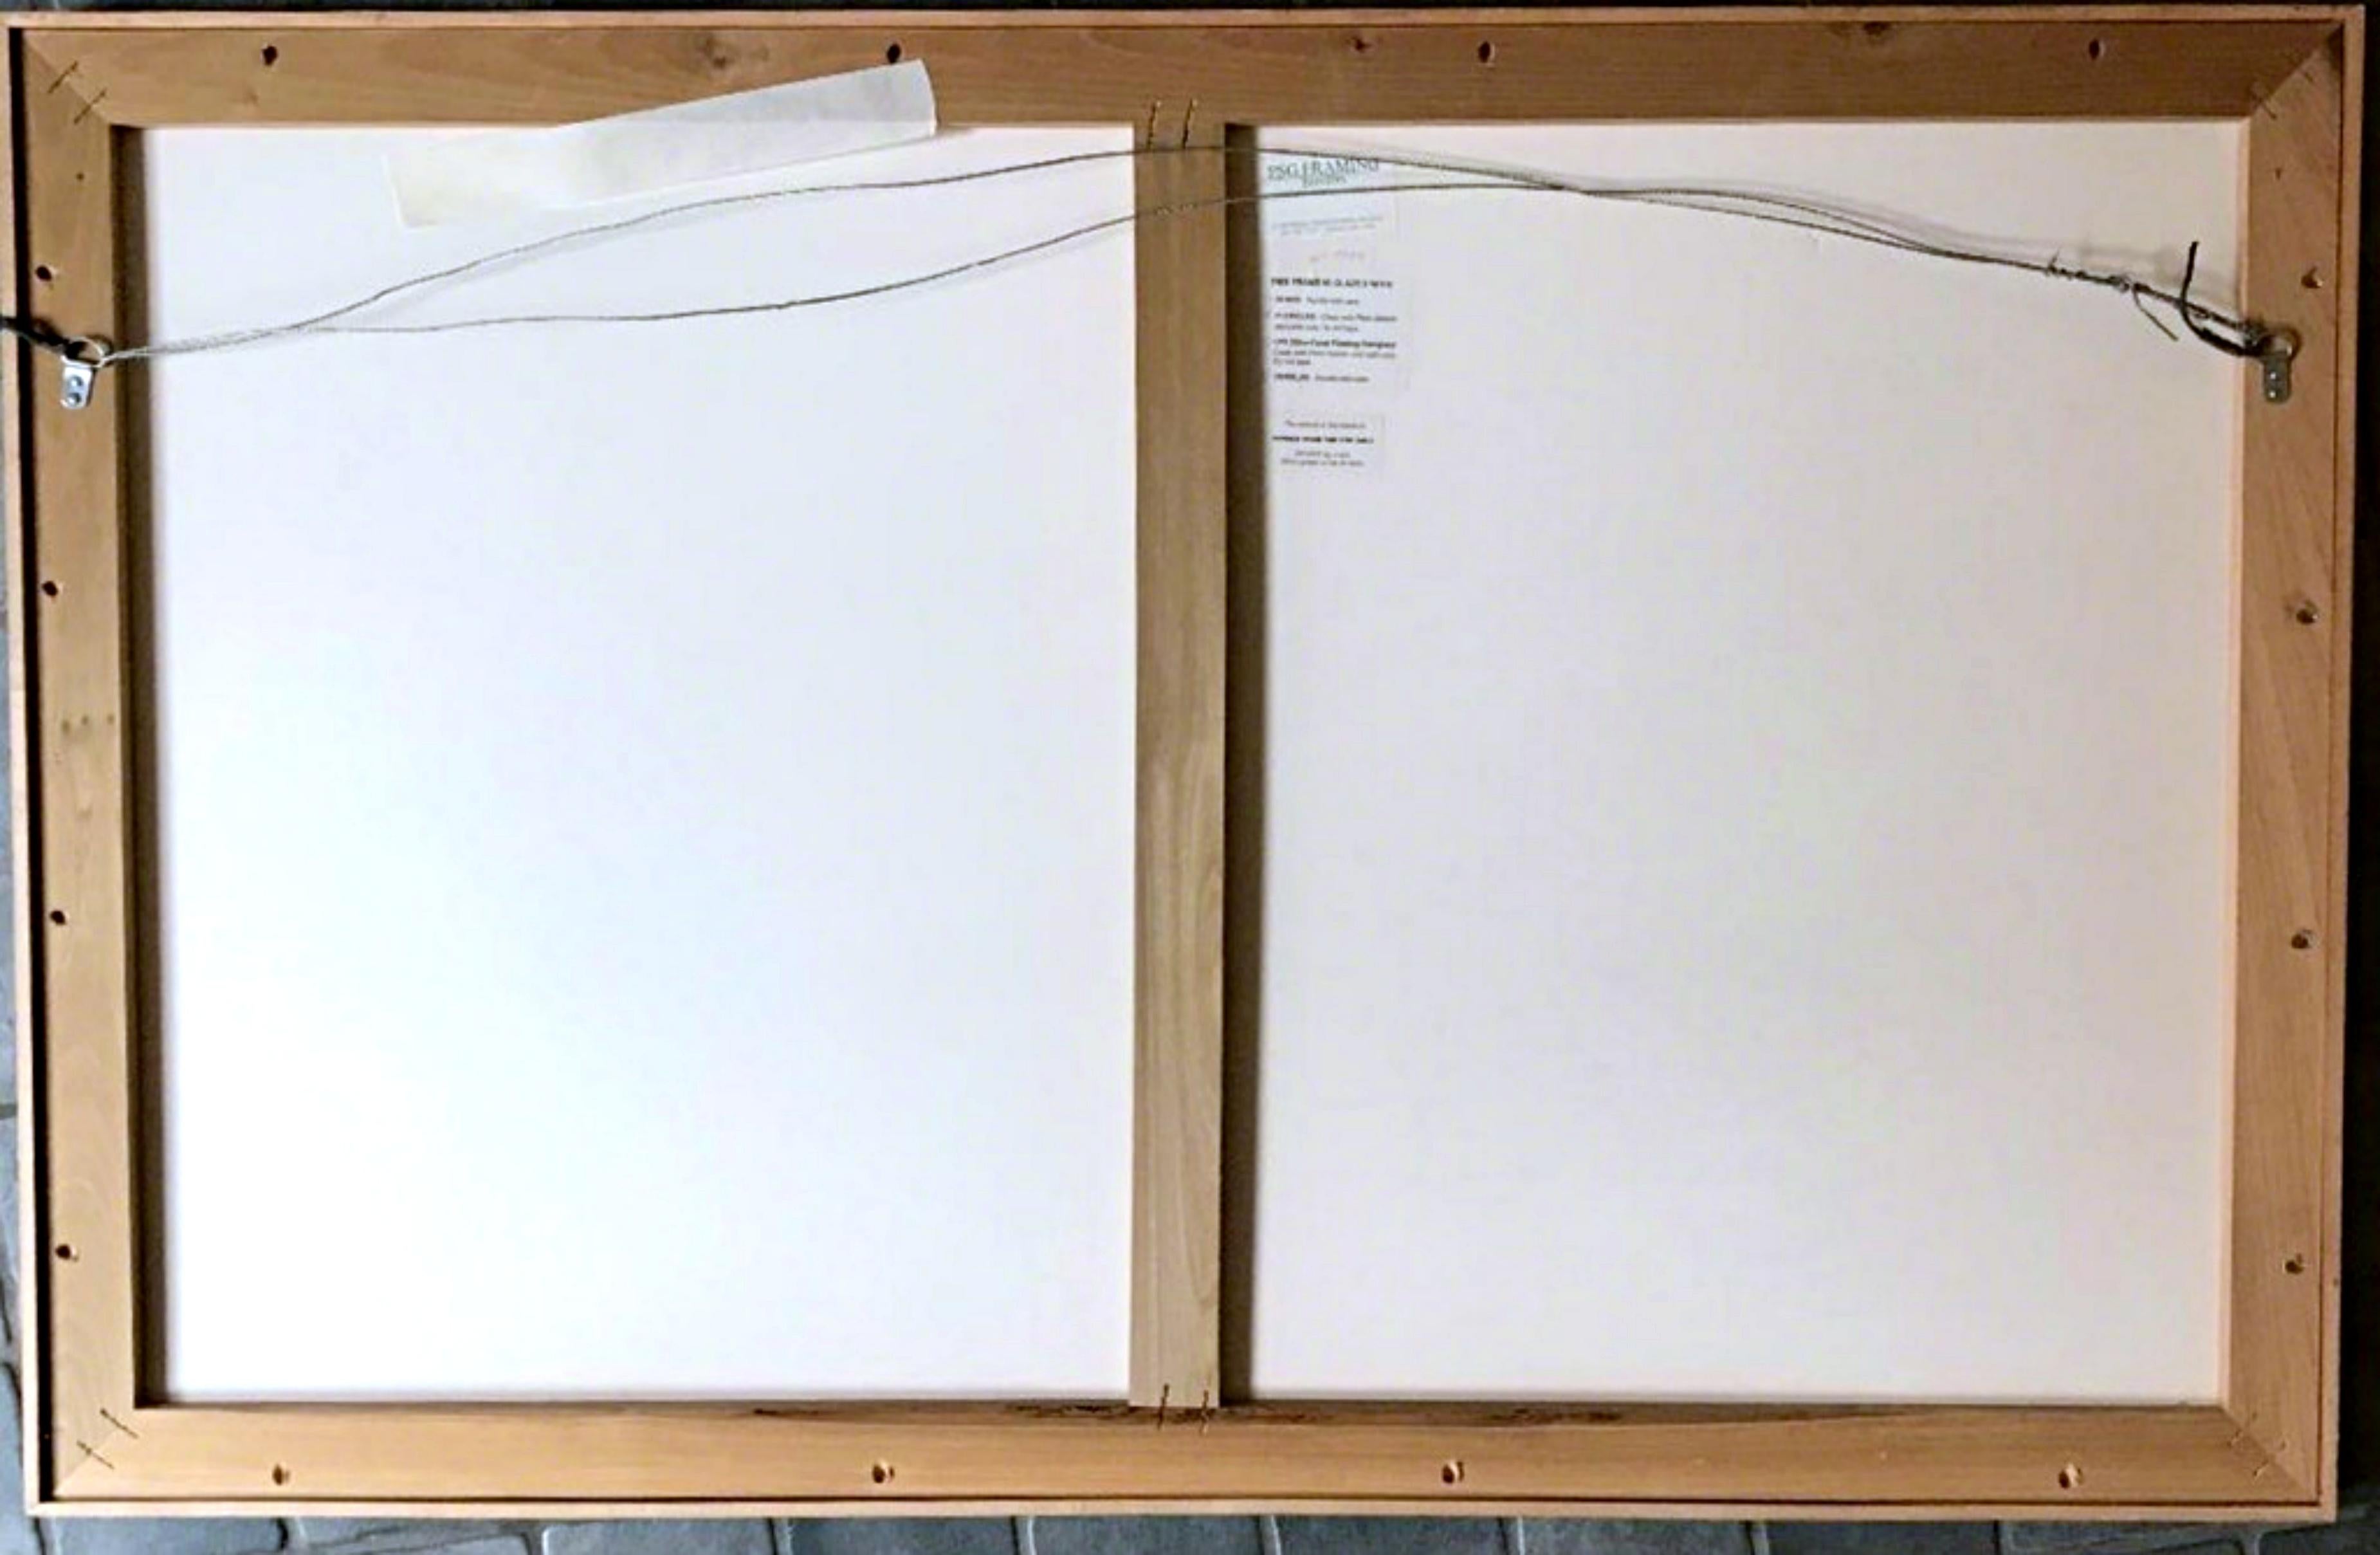 Michael Heizer
III-8 (zwei einzigartige Werke), 1983
Monodruck auf zwei einzelnen Blättern weißen handgeschöpften TGL-Papiers, handkoloriert mit Buntstiften, Lackstiften, flüssigen und Sprüh-Acrylfarben
Handsigniert vom Künstler, signiert Heizer und